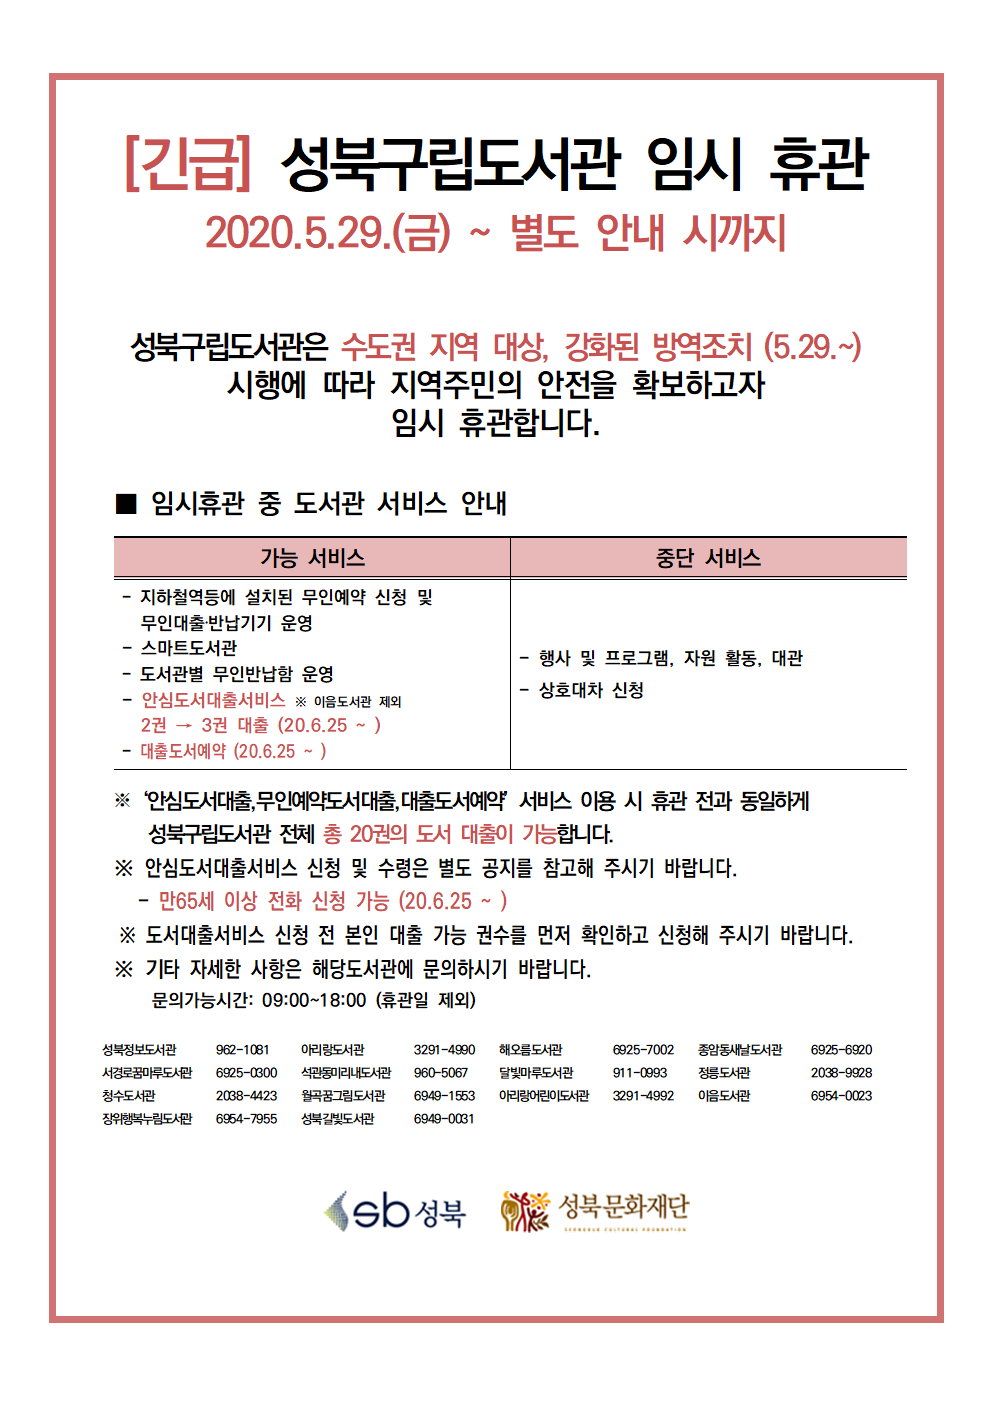 [긴급] 성북구립도서관 임시 휴관 안내 (2020.5.29 ~ 별도 안내 시까지)  